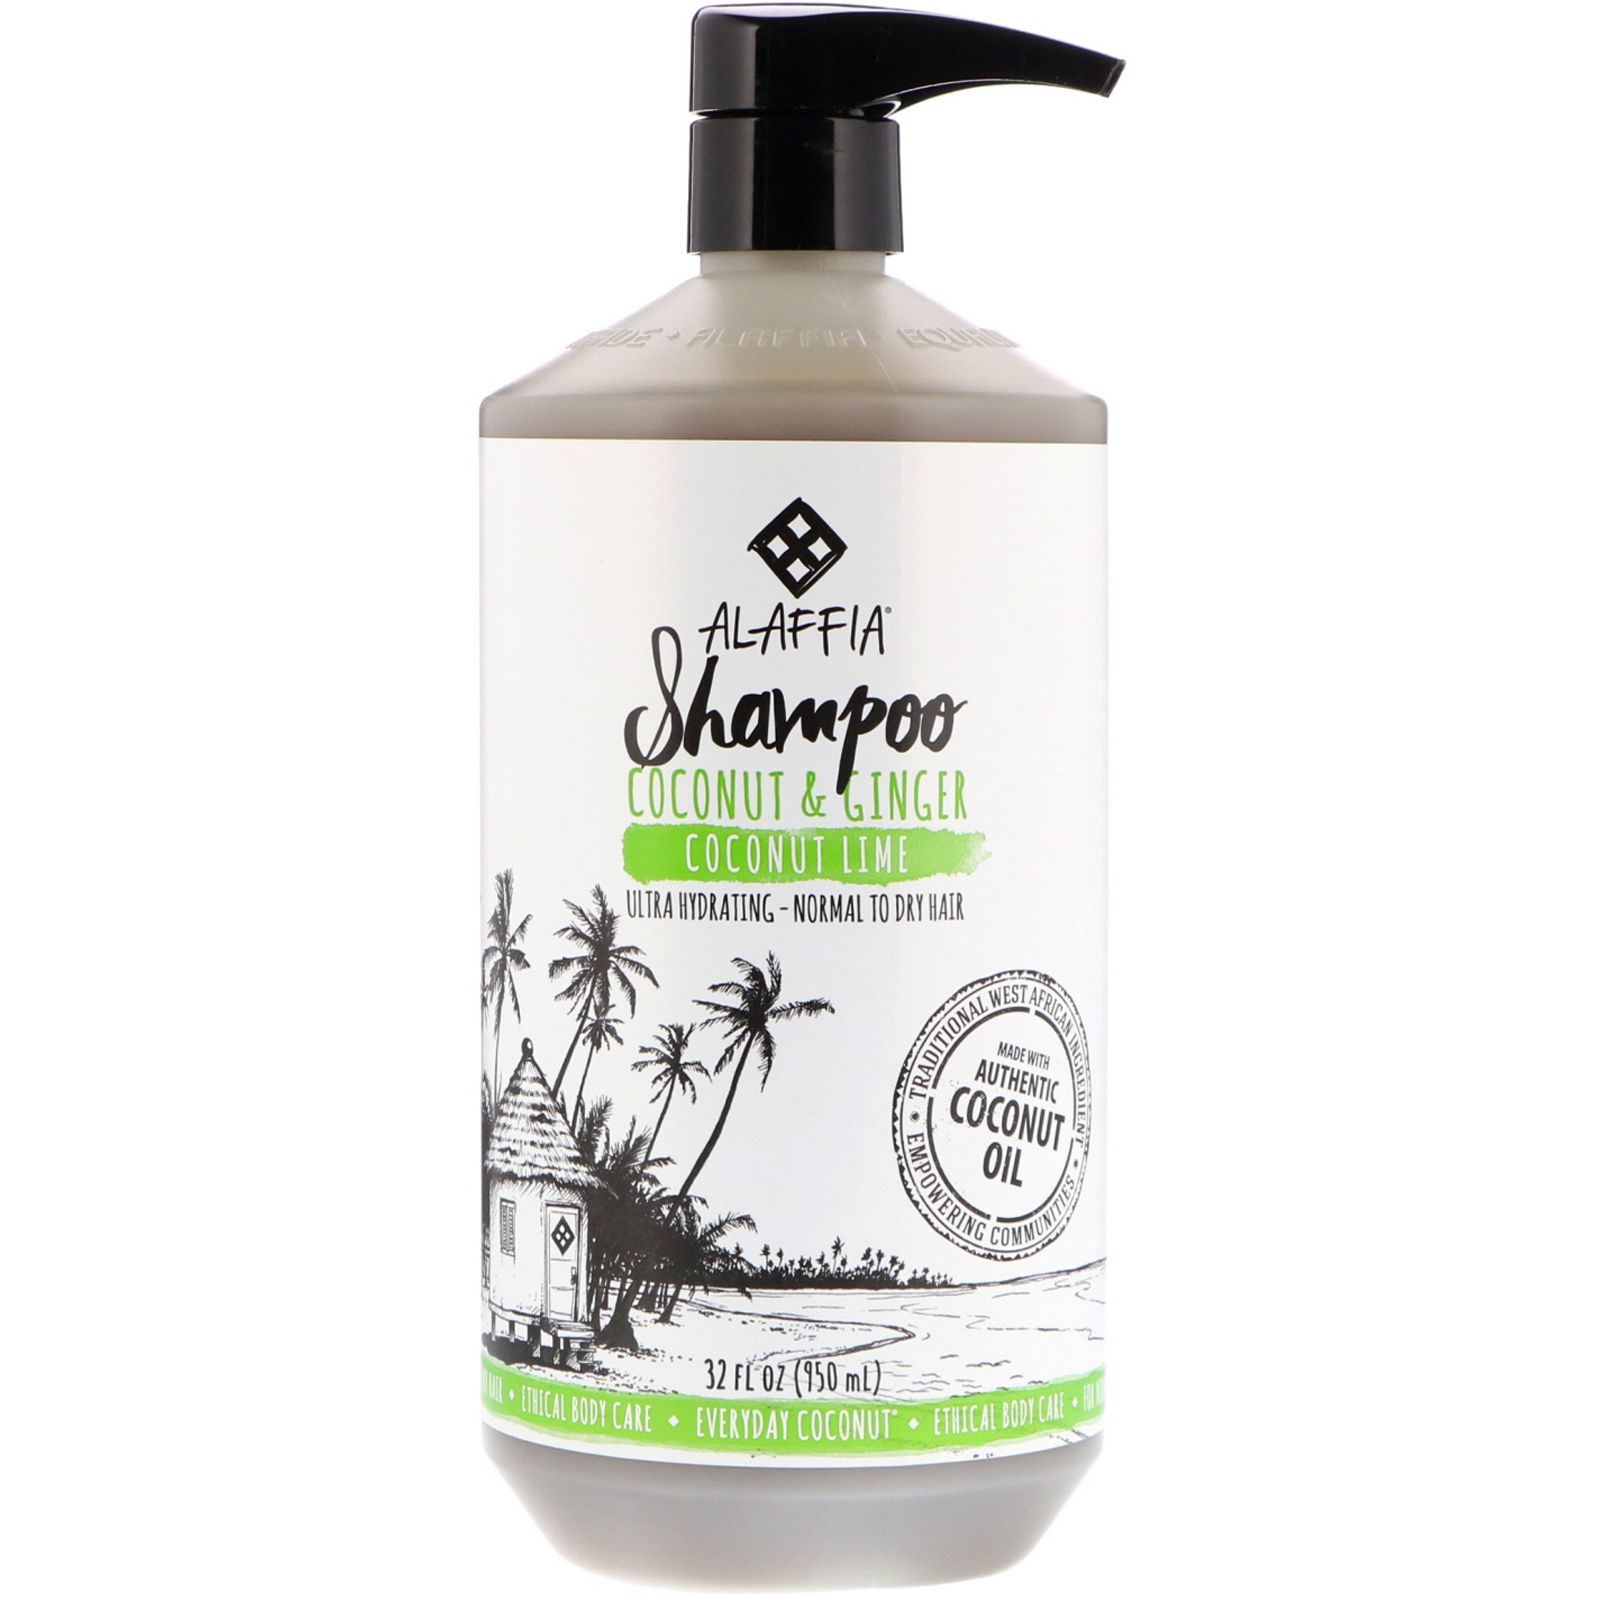 Everyday Coconut Шампунь ультра увлажнение для нормальных и сухих волос кокос и лайм 32 ж. унц. (950 мл)